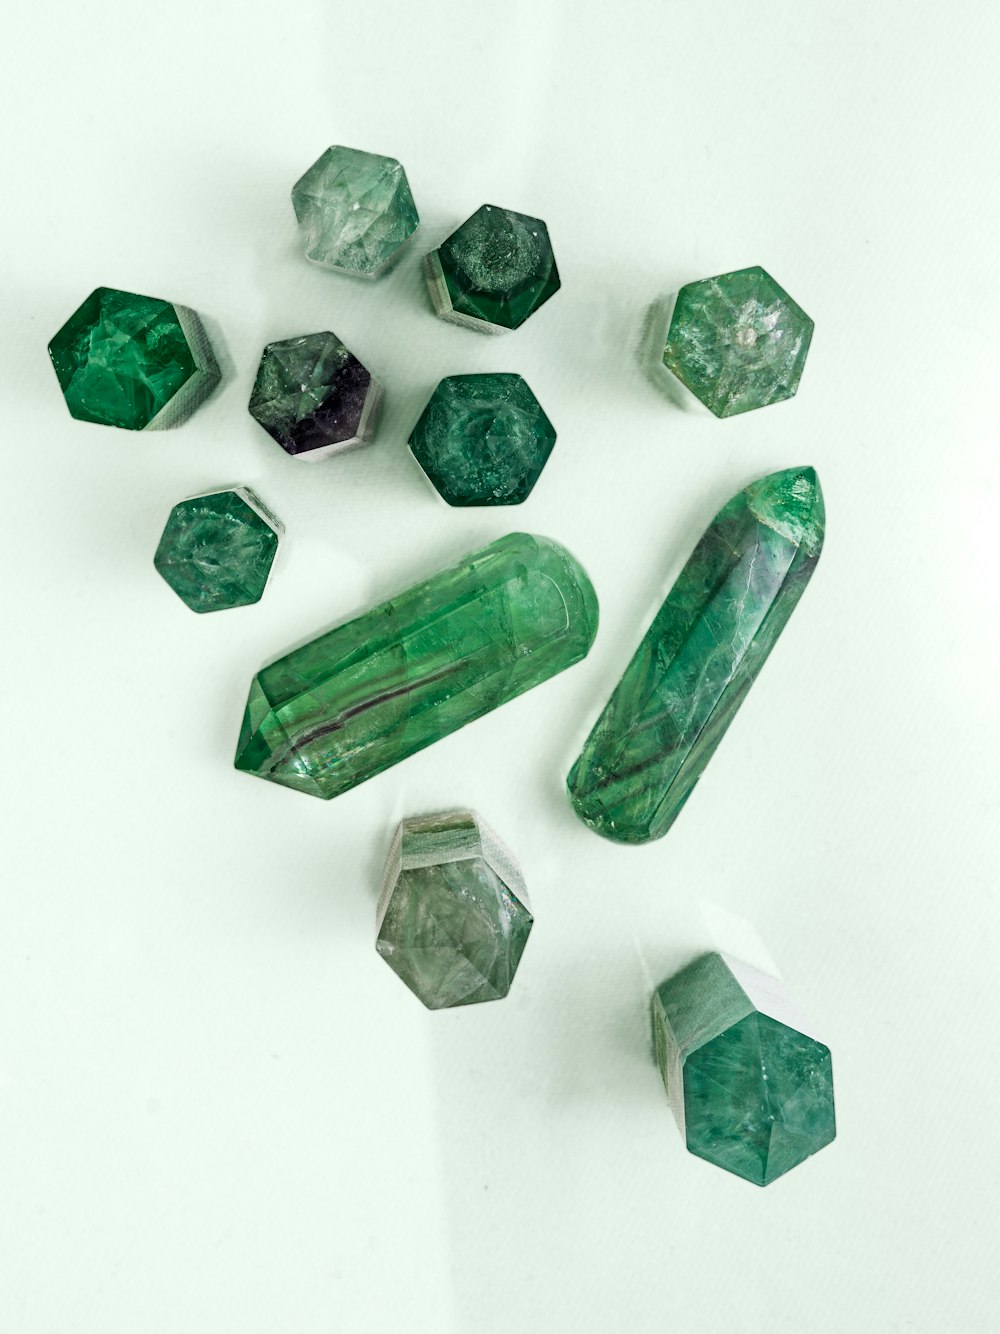 un groupe de cristaux verts assis sur une table blanche